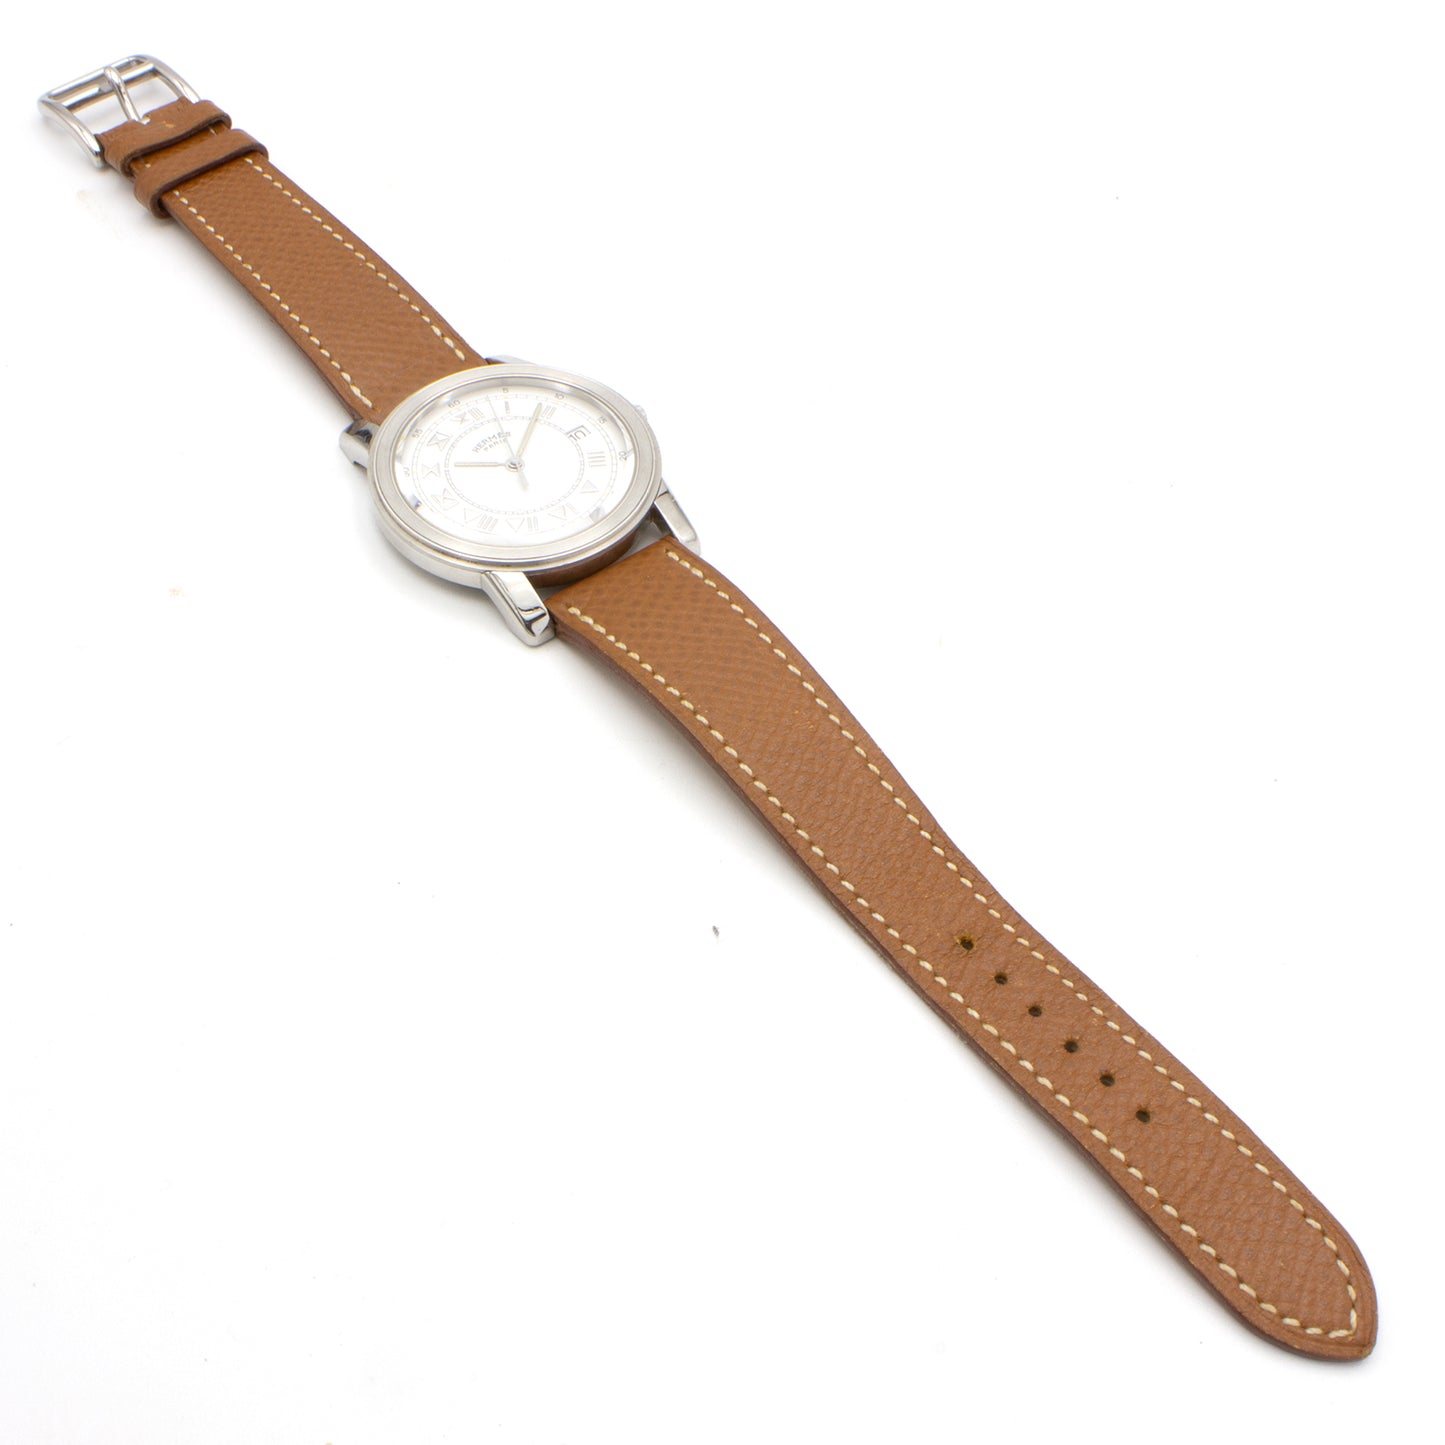 Hermès Carrick 34mm watch